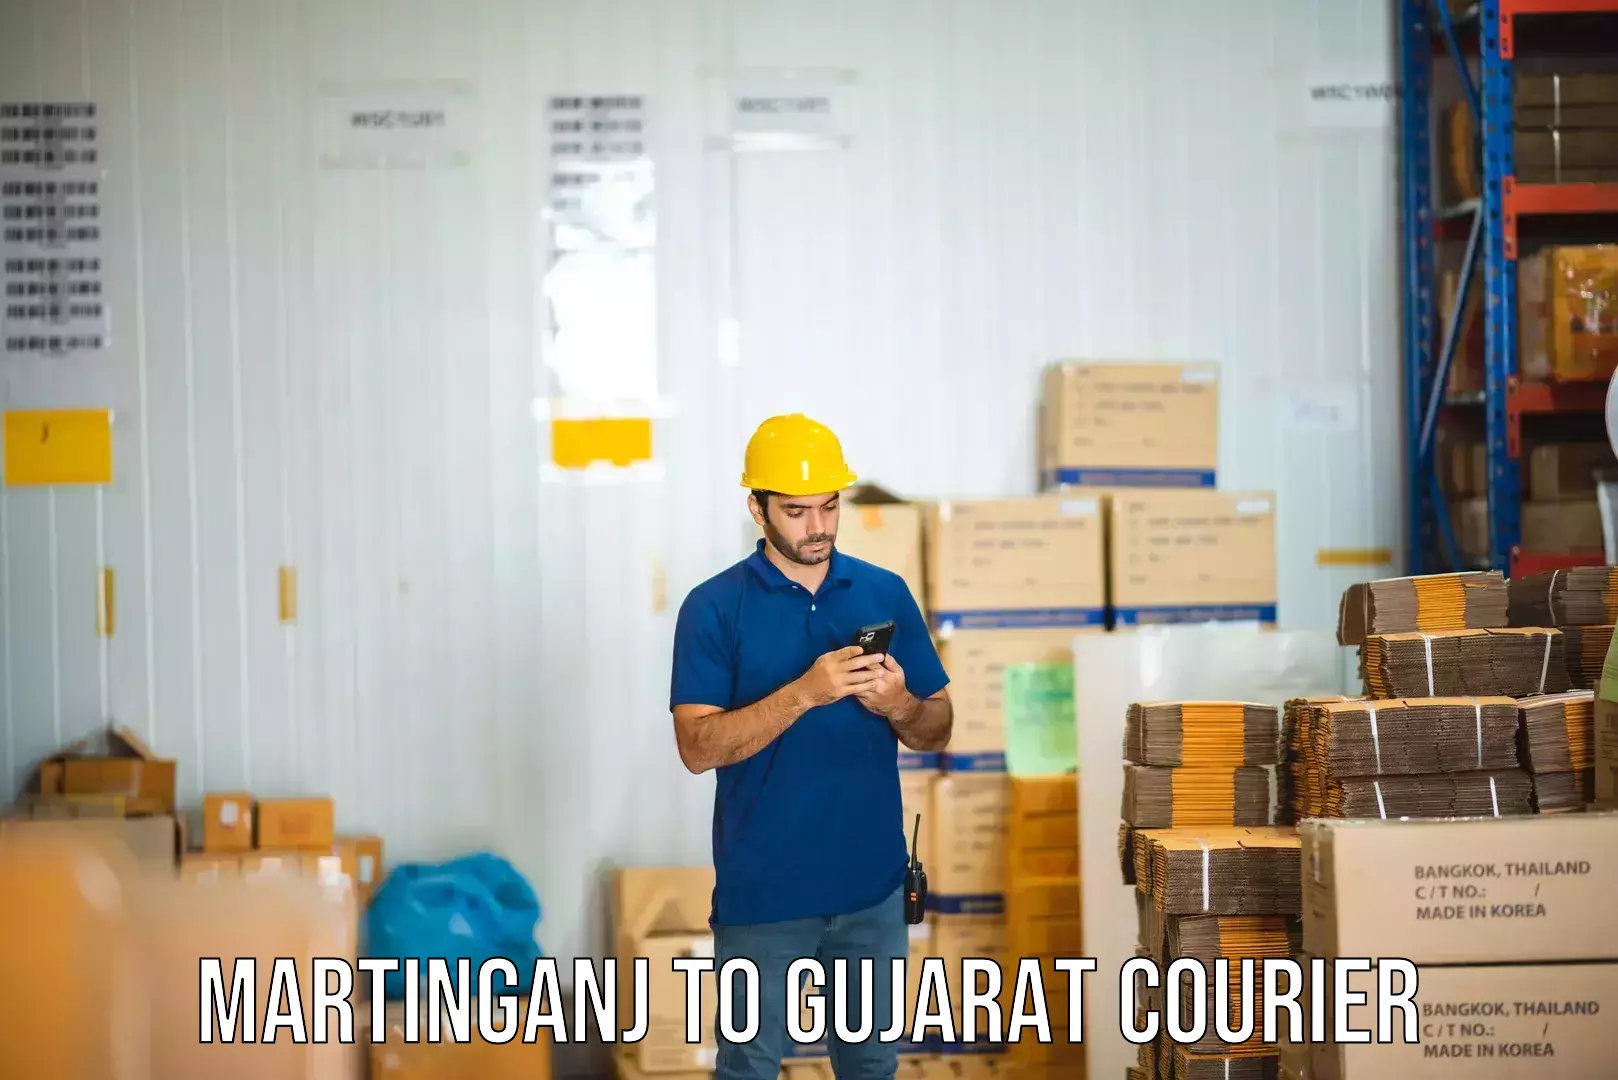 Business shipping needs Martinganj to Gujarat